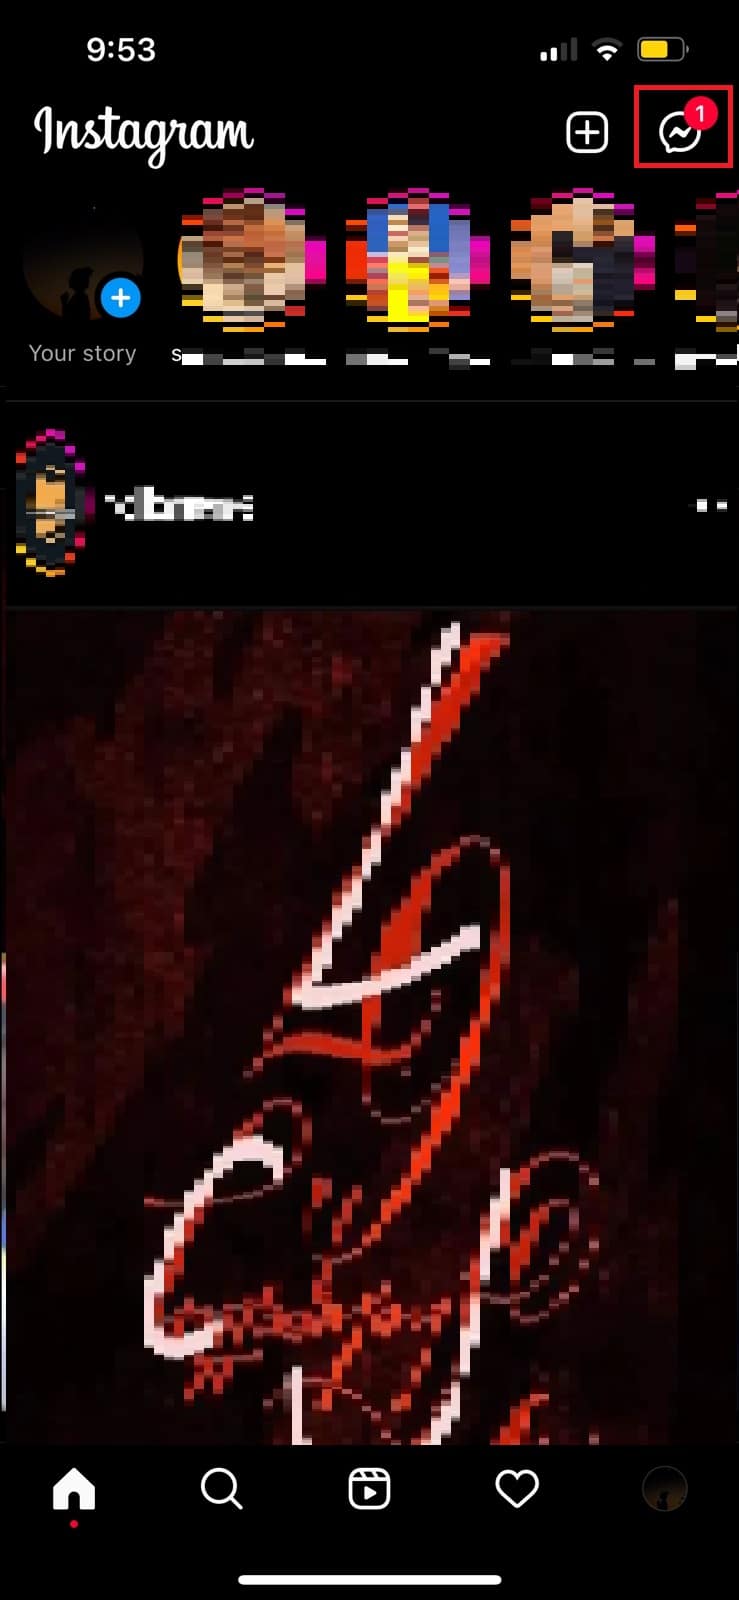 Tocca il simbolo della freccia nell'angolo in alto a destra di Instagram.